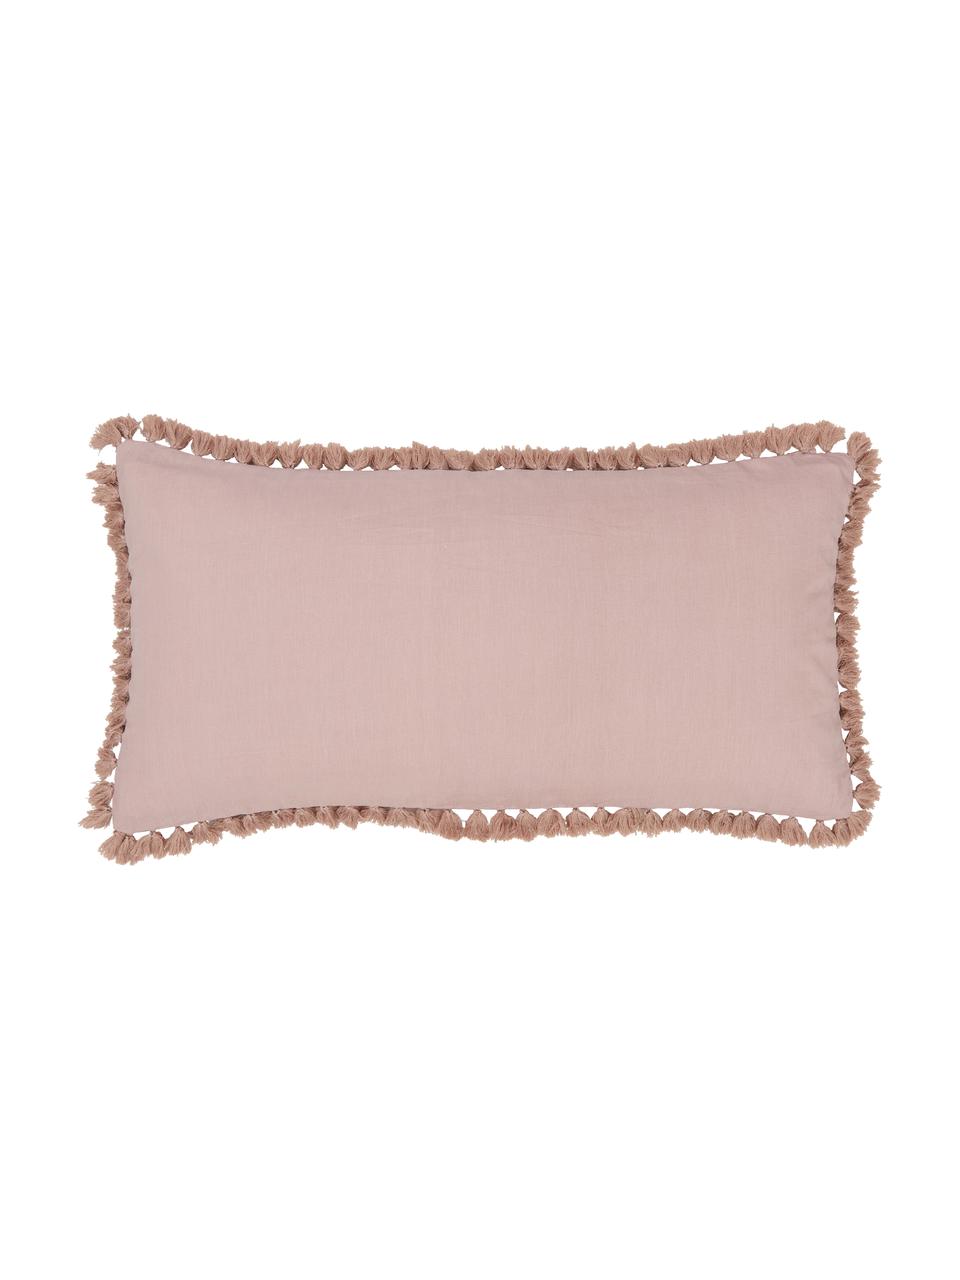 Poszewka na poduszkę z bawełny z chwostami Polly, 2 szt., Brudny różowy, S 40 x D 80 cm